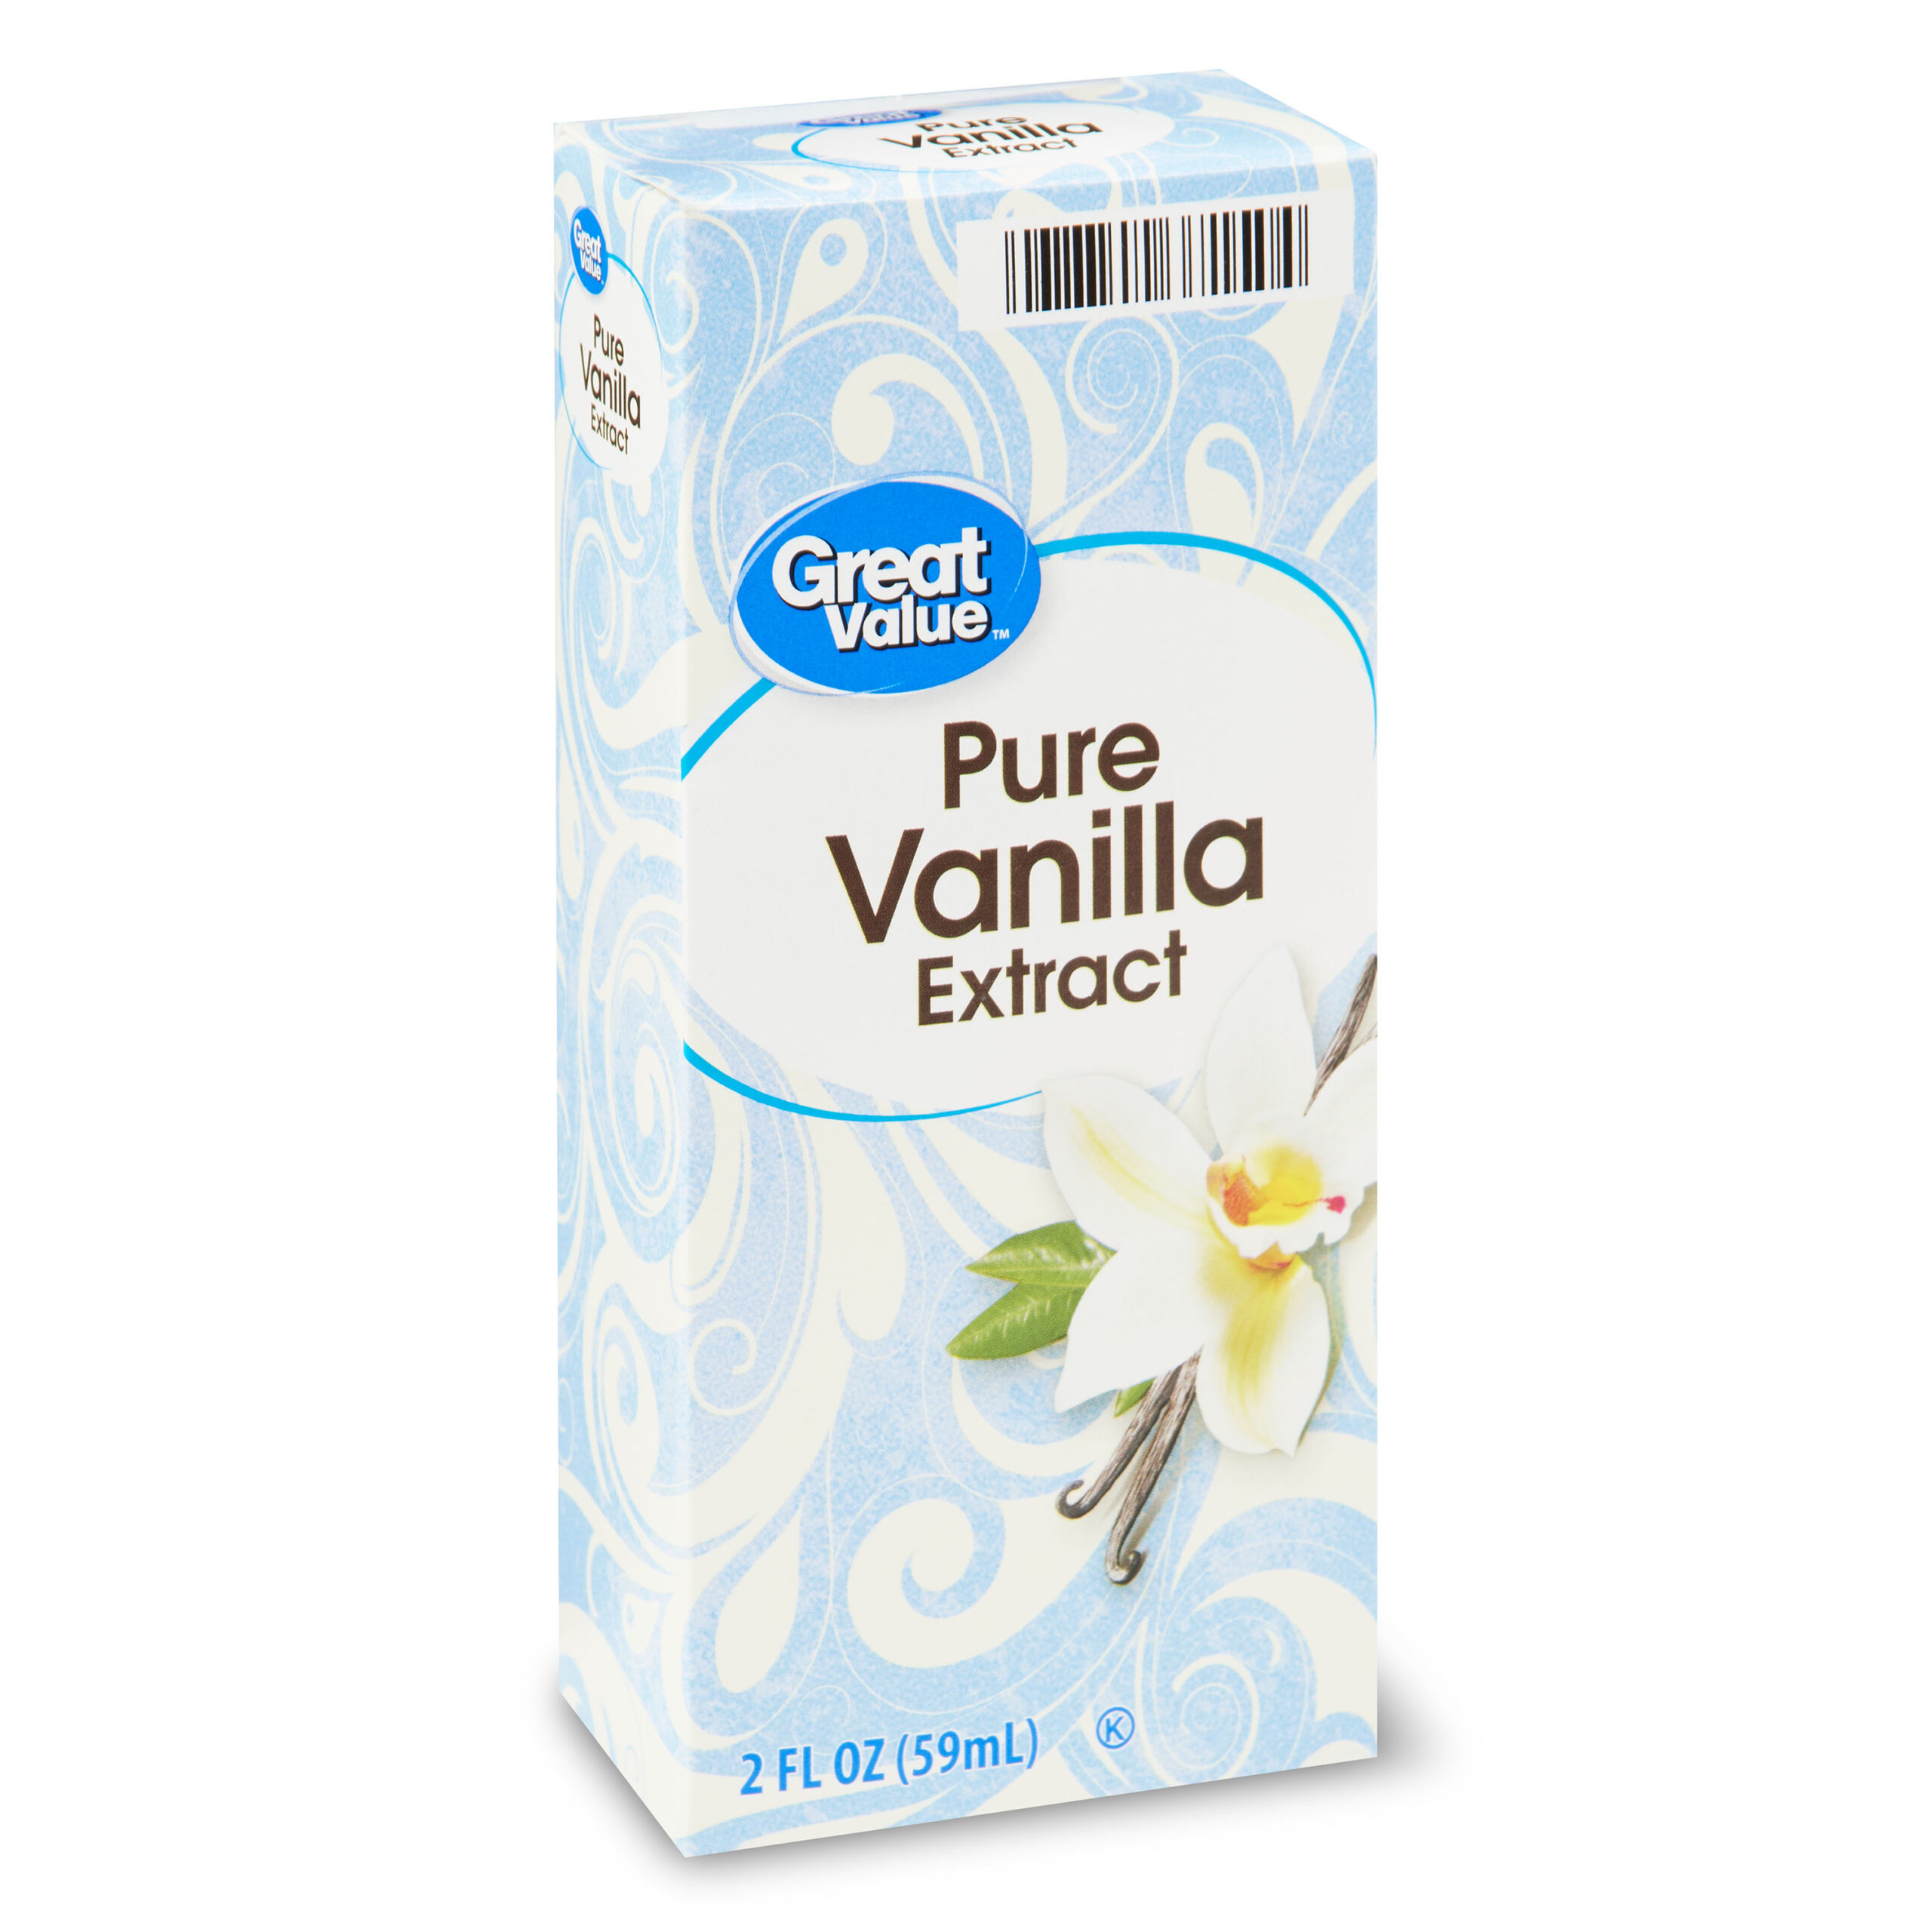 Great Value Pure Vanilla Extract, 2 fl oz - Walmart.com